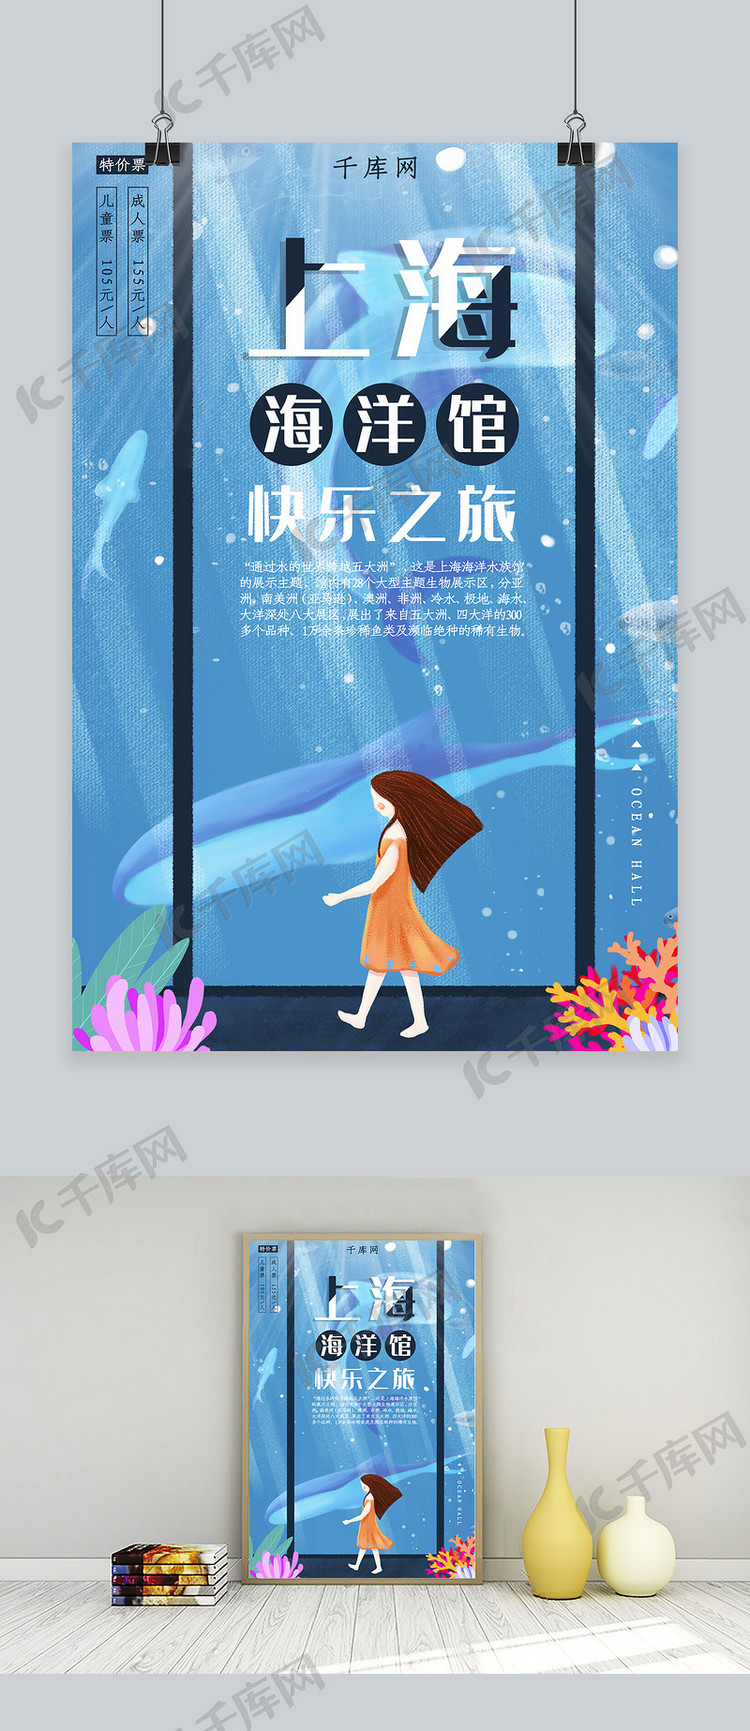 上海海洋馆快乐之旅海报